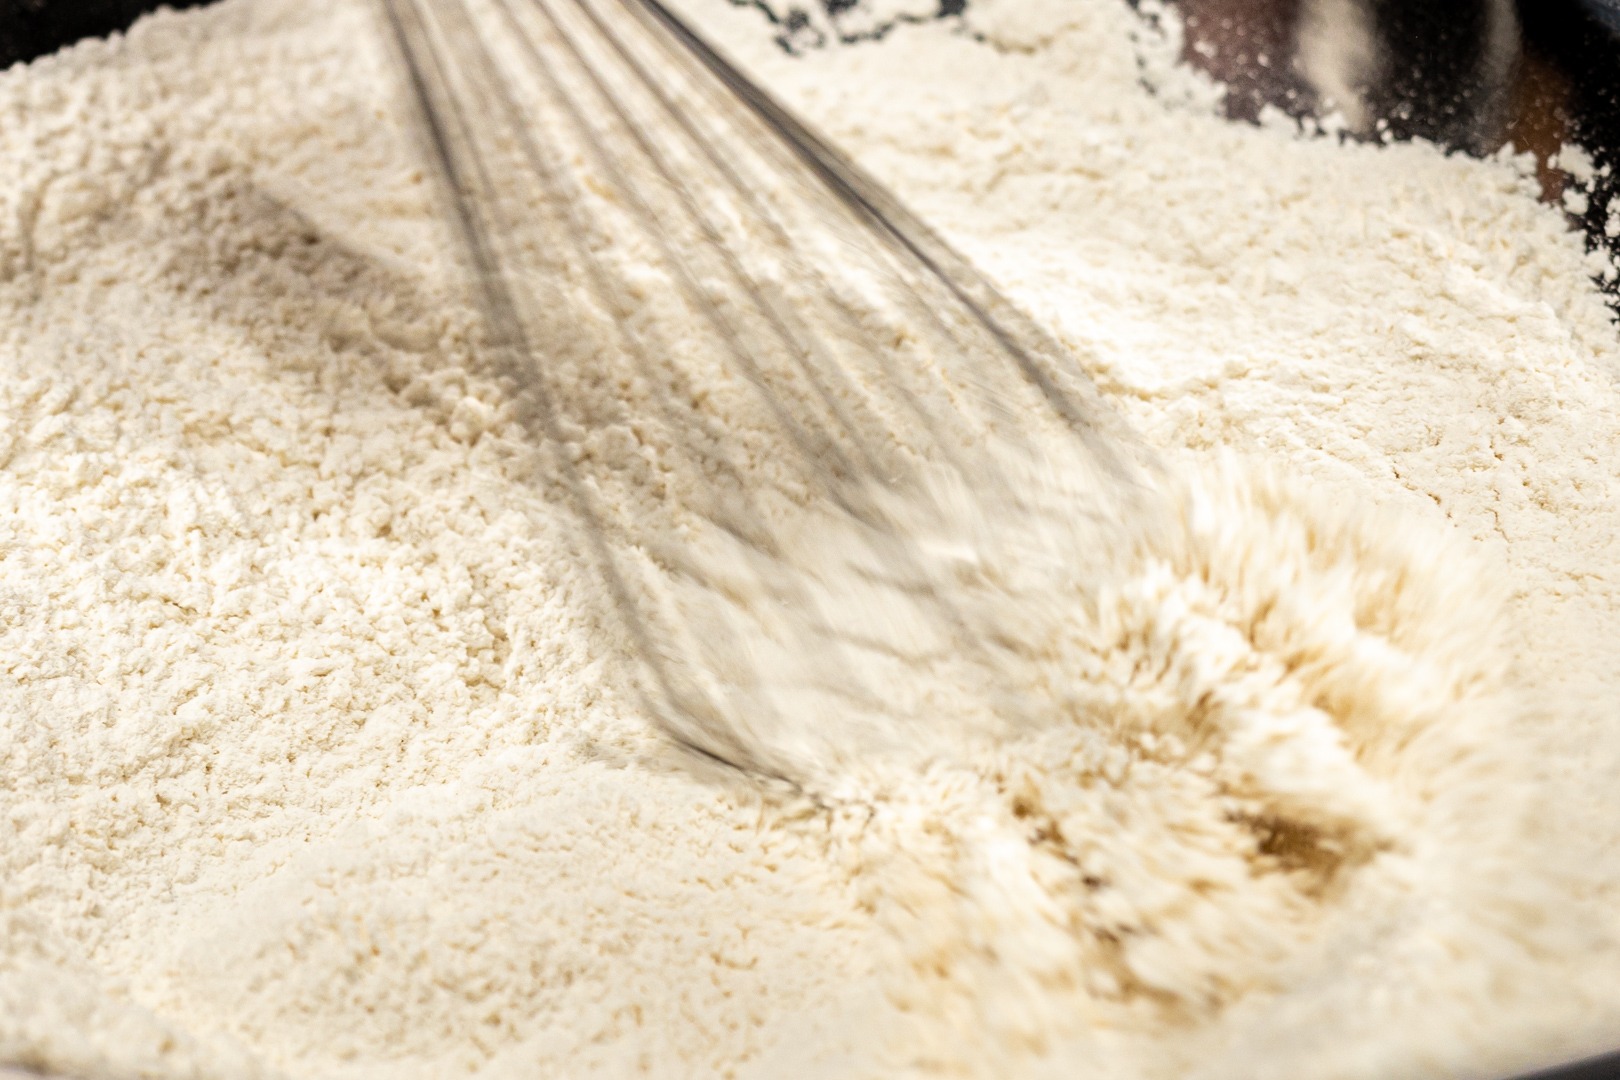 whisking flour with salt for breading